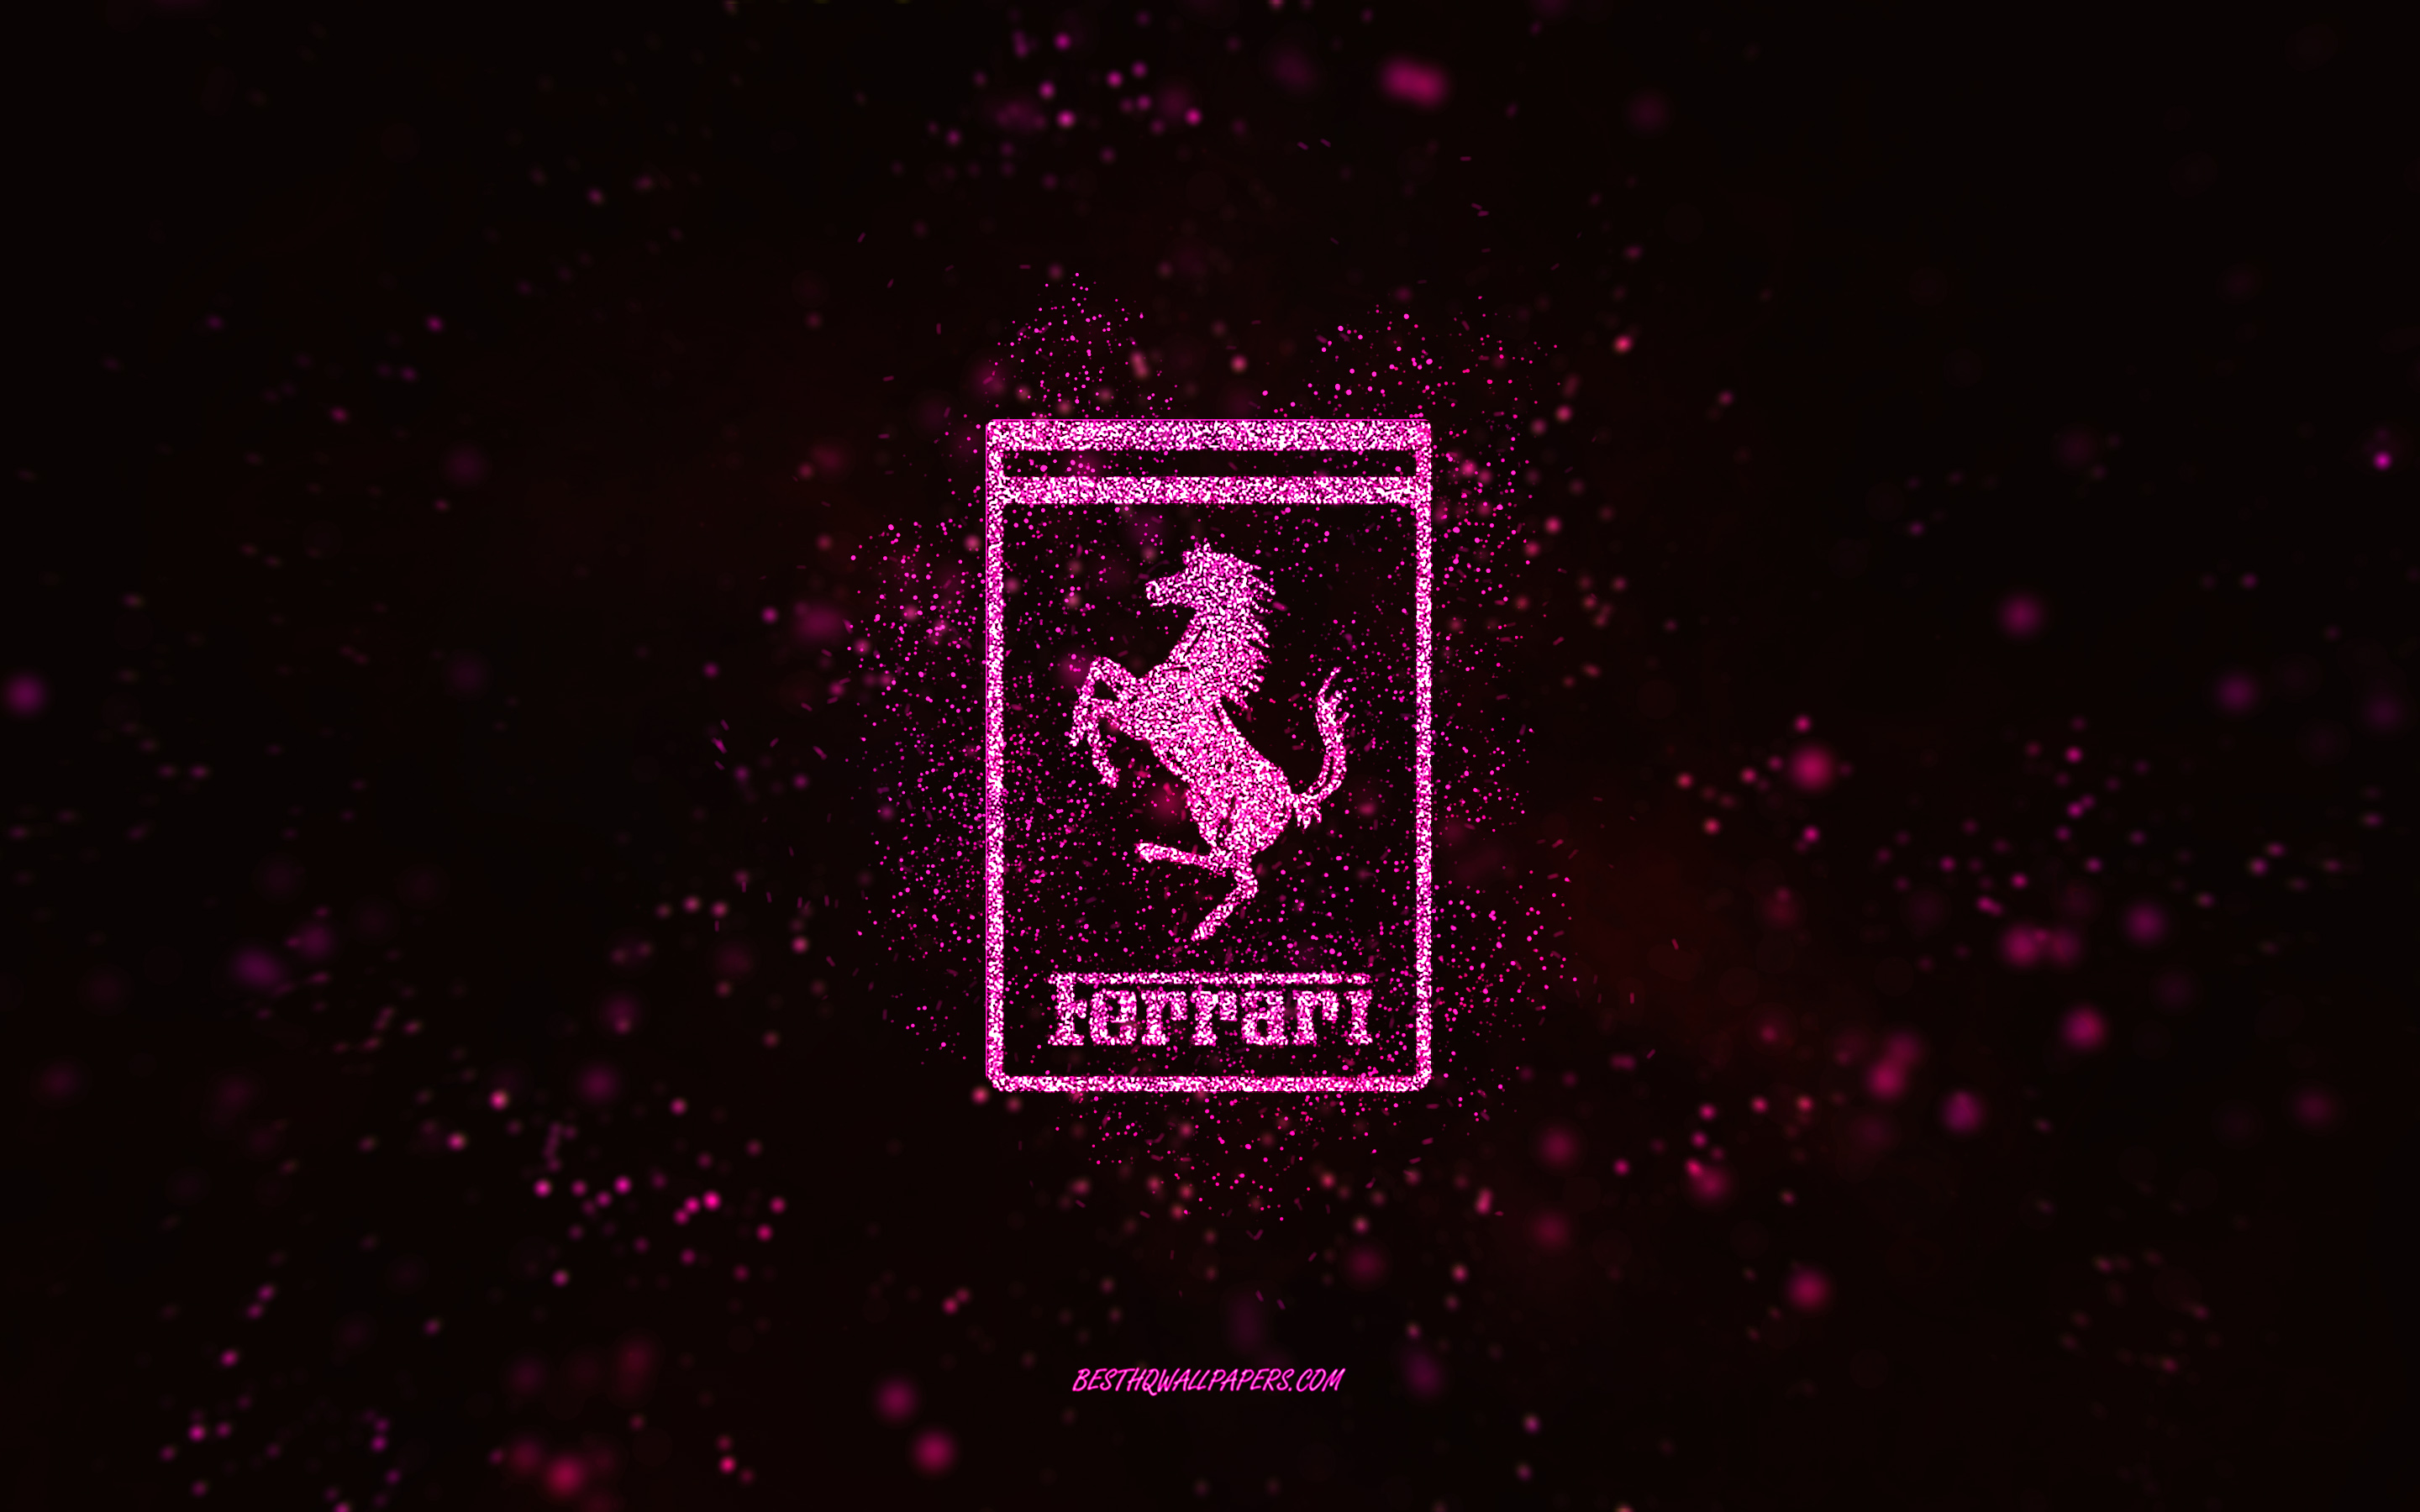 Pink Ferrari Wallpapers